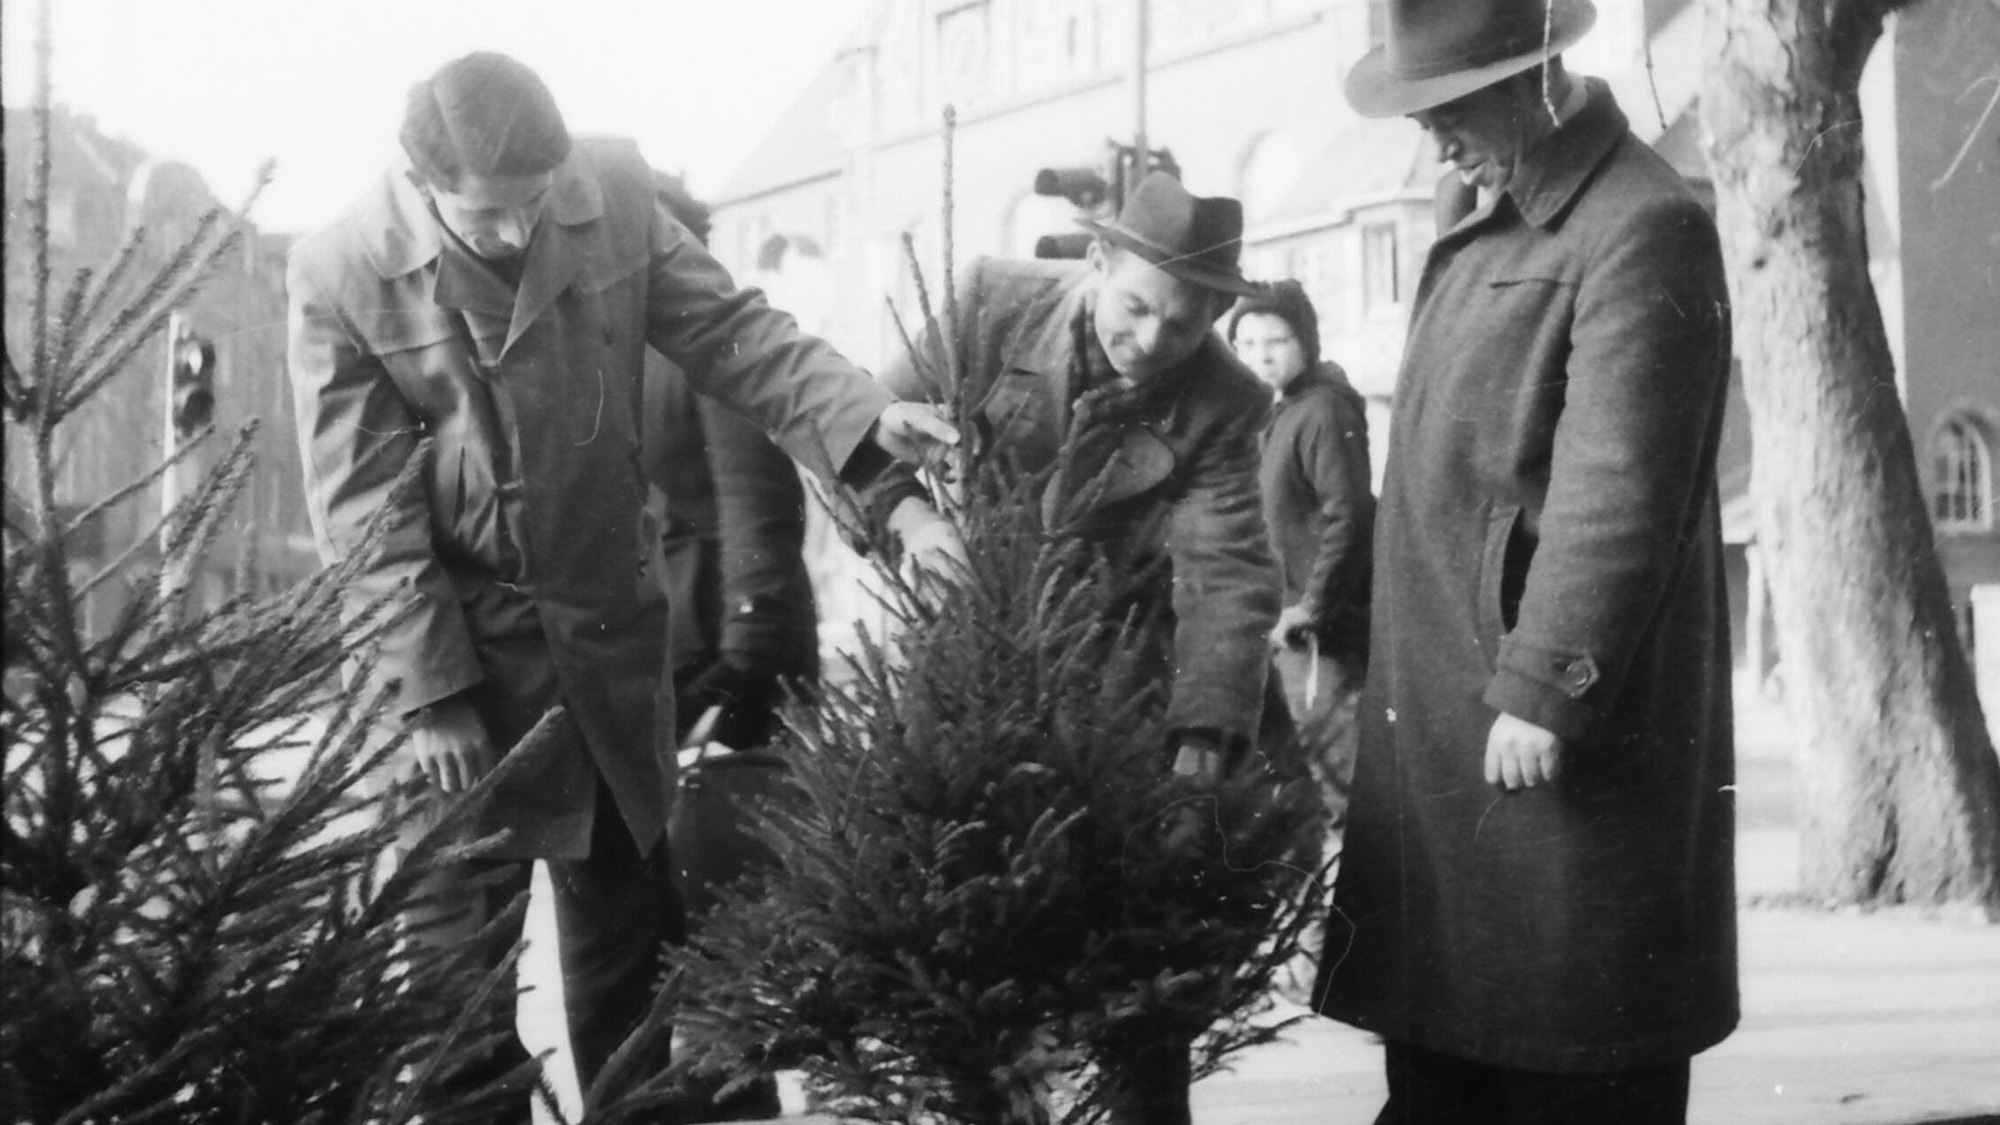 1959 auf dem Marktplatz in Bergisch Gladbach: Drei Männer begutachten an einem Verkaufsstand einen kleinen Weihnachtsbaum.